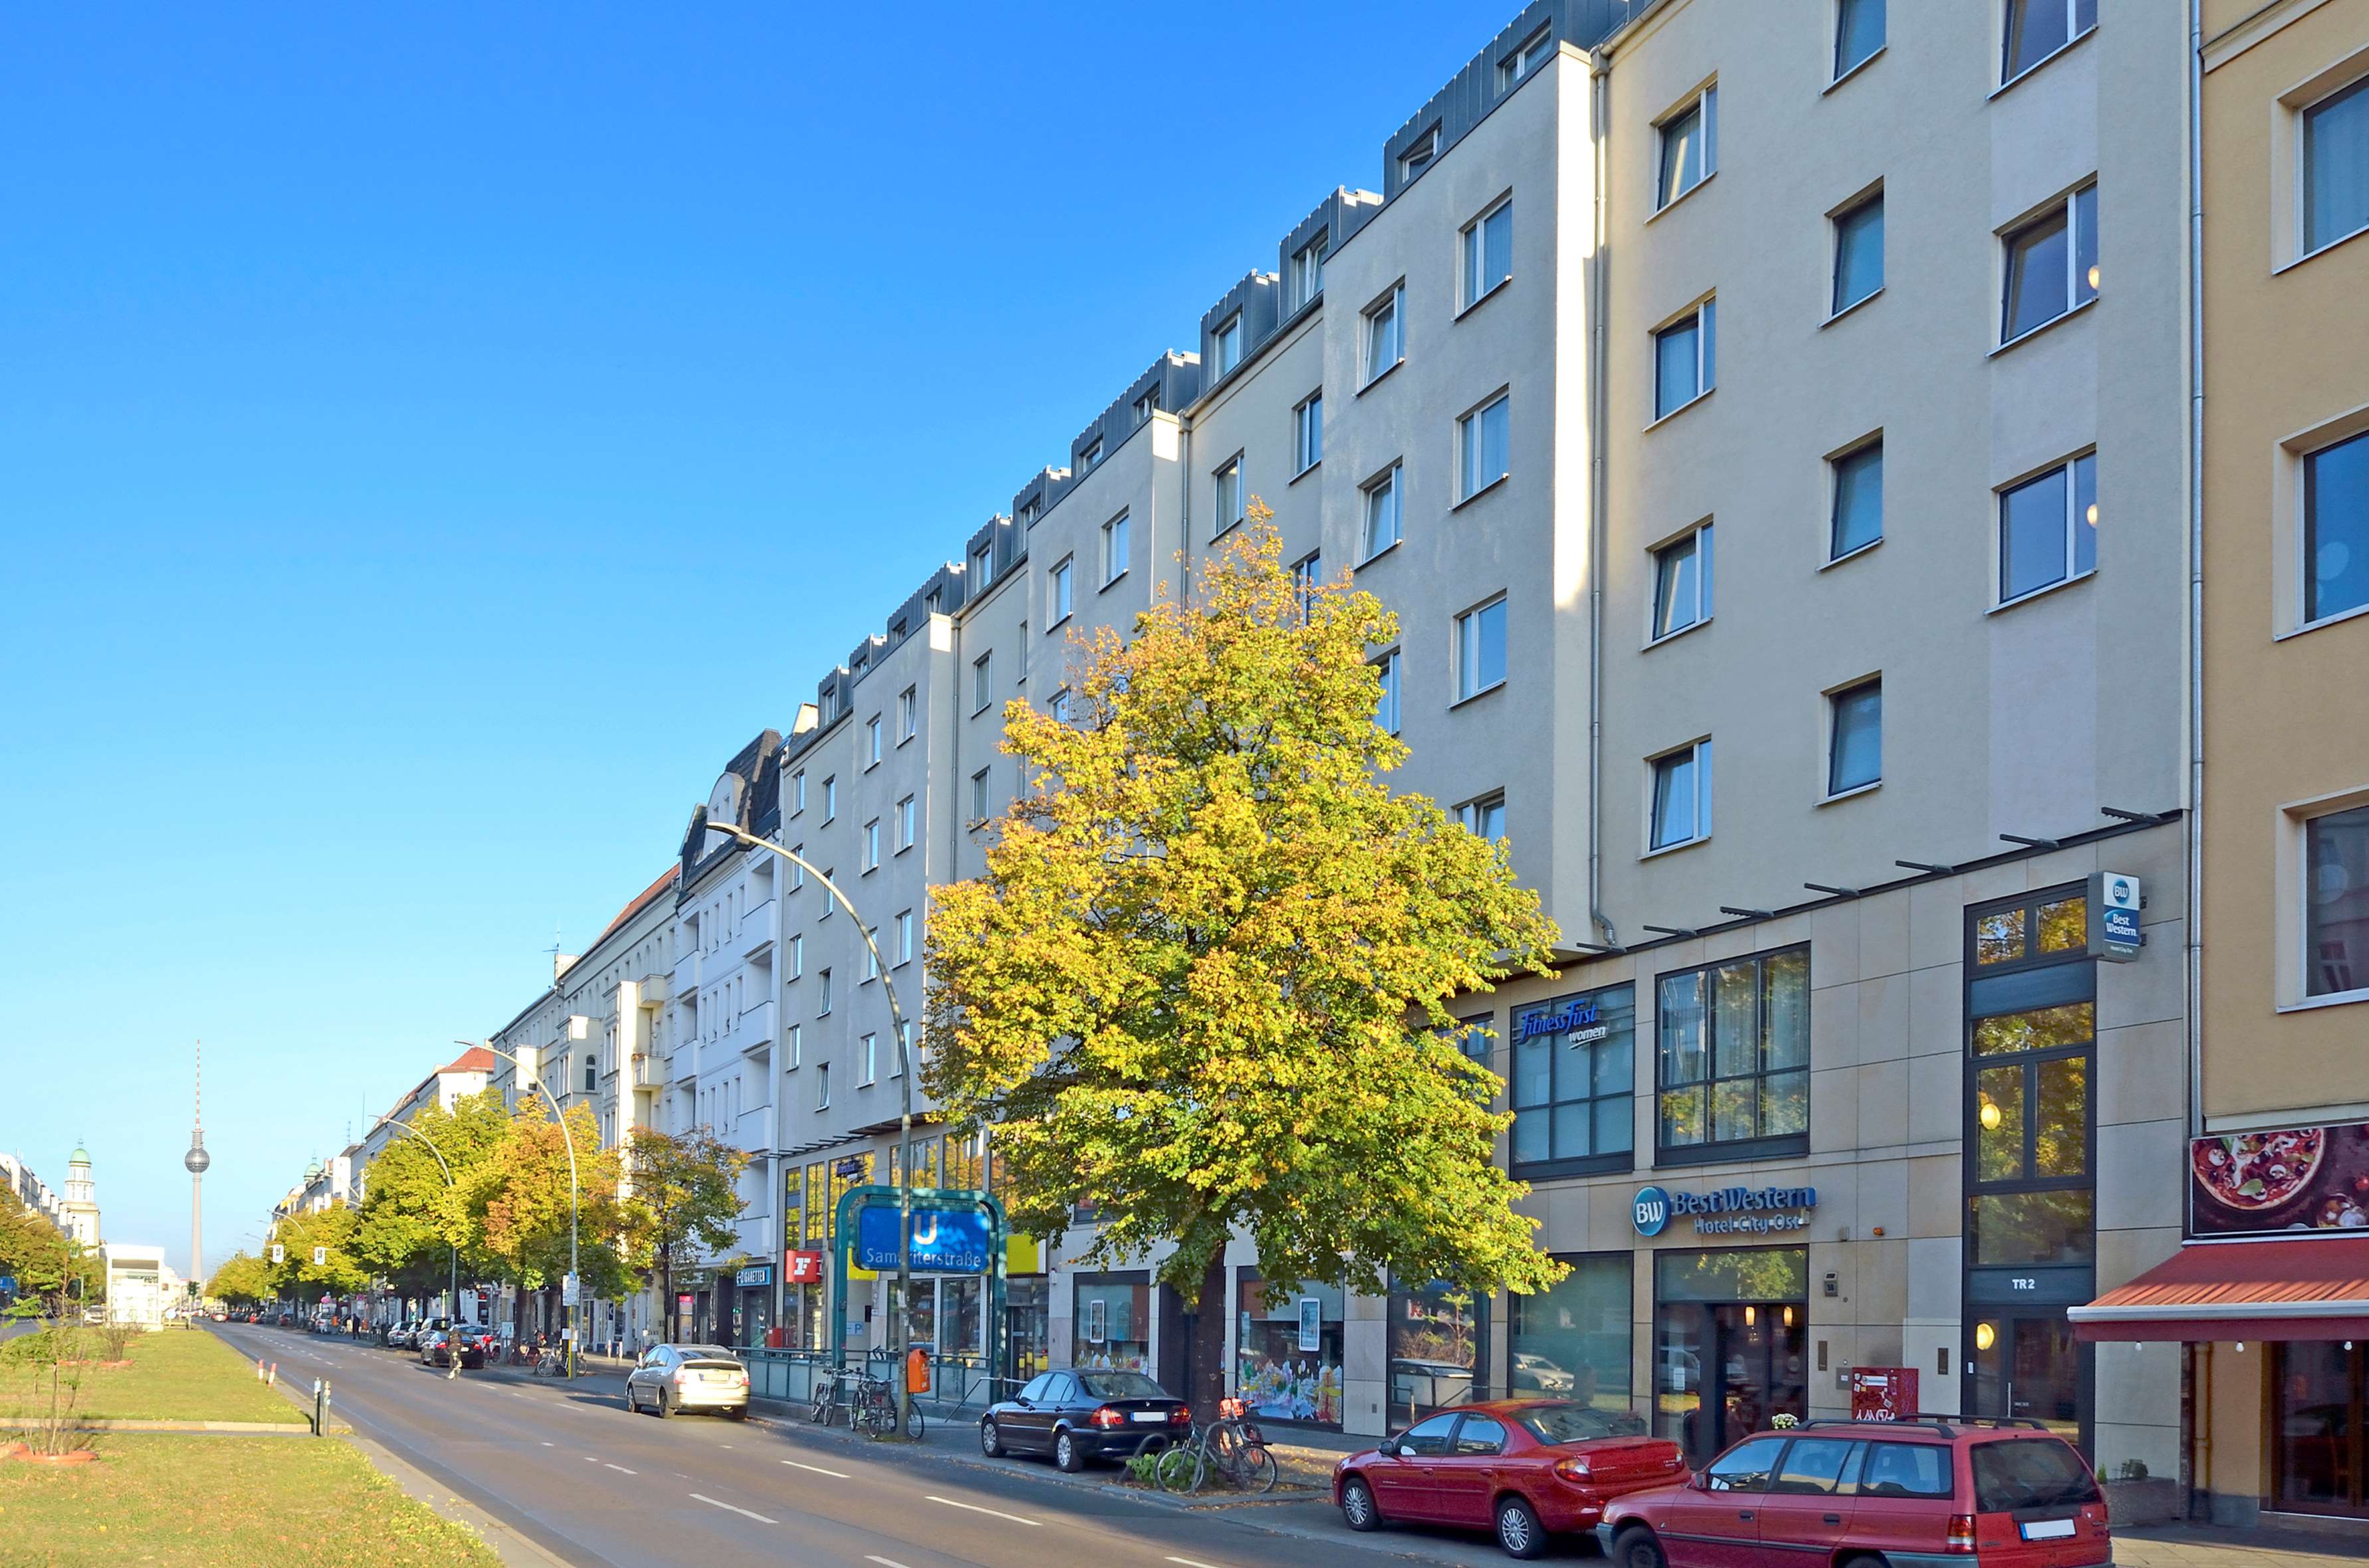 Best Western Hotel City Ost, Frankfurter Allee 57-59 in Berlin